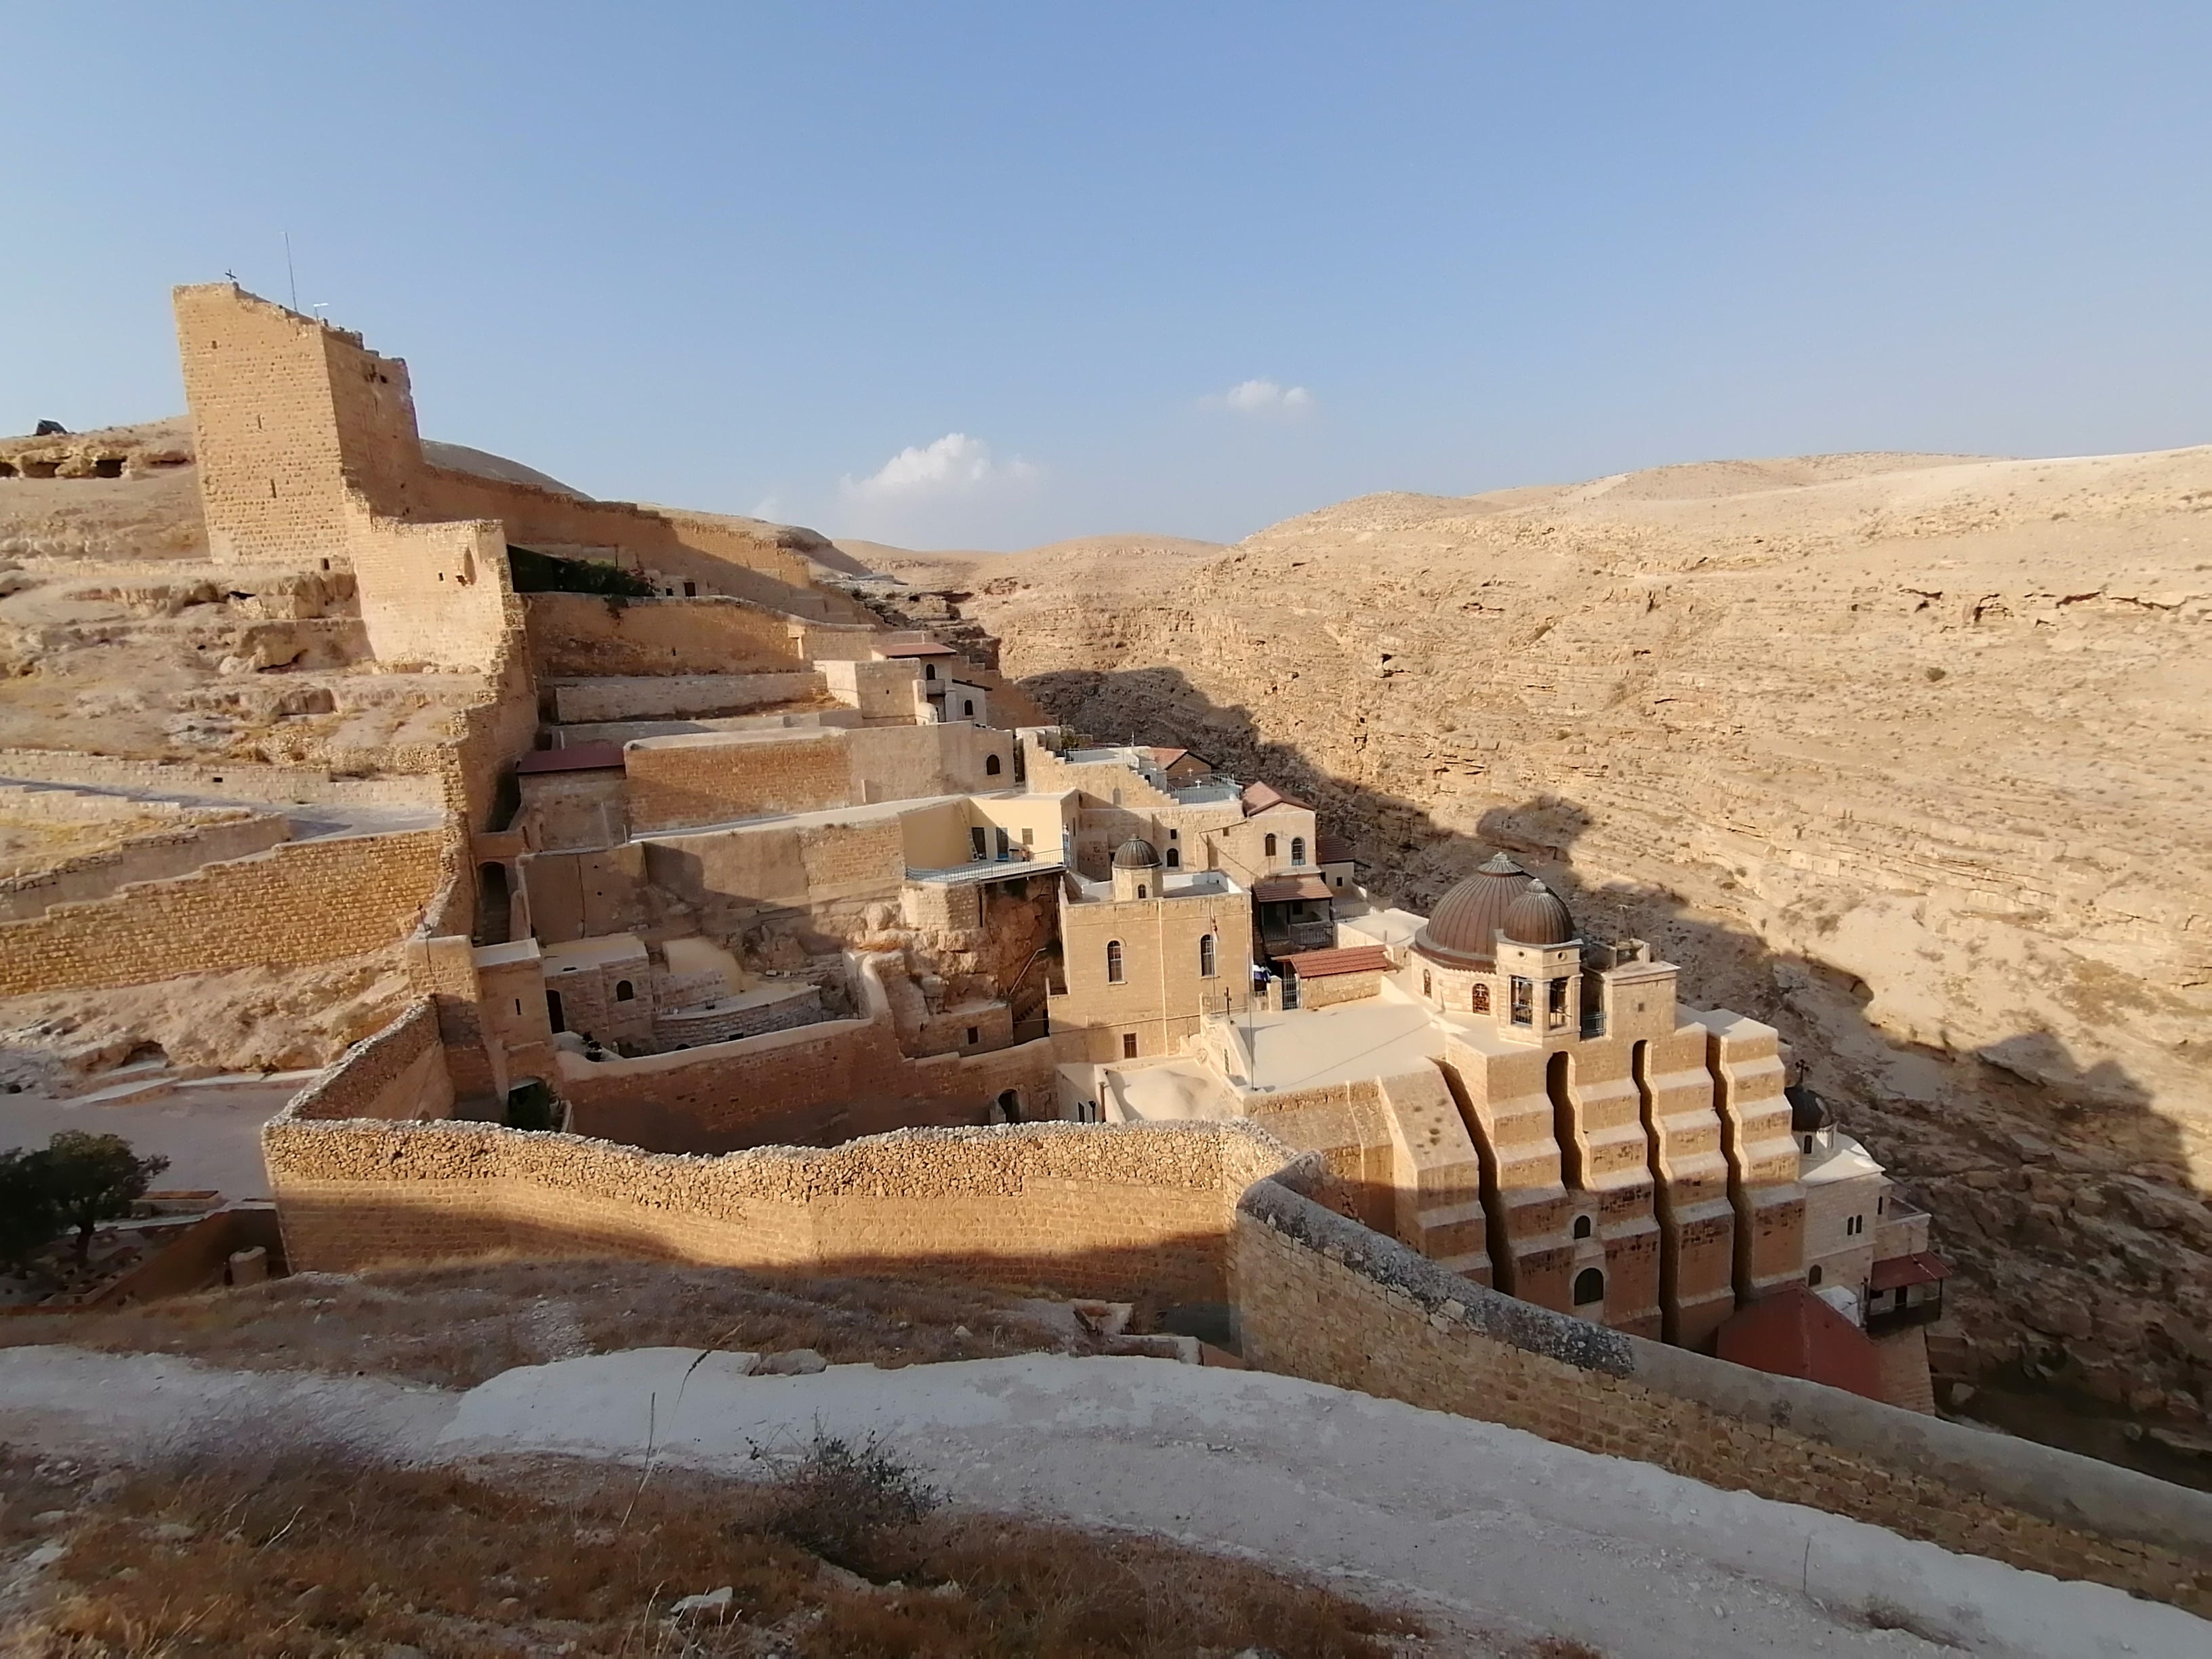 Mount of Temptation monastery Bethlehem full day tour from Jerusalem and Tel Aviv